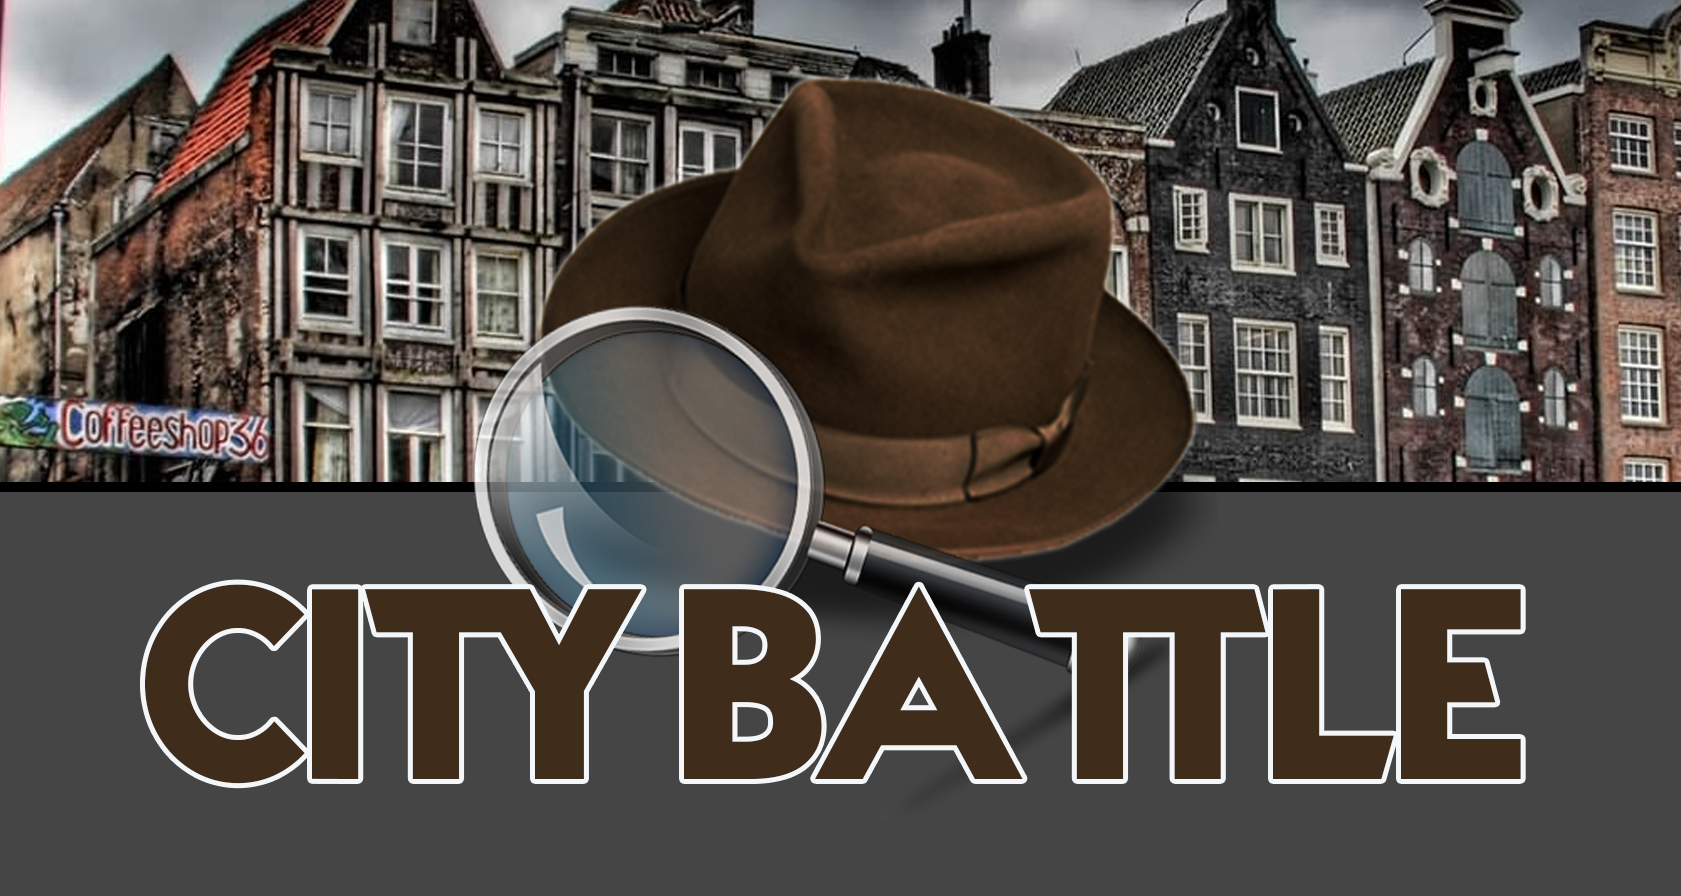 Groepsuitje: GPS City Battle: het interactieve groepsspel